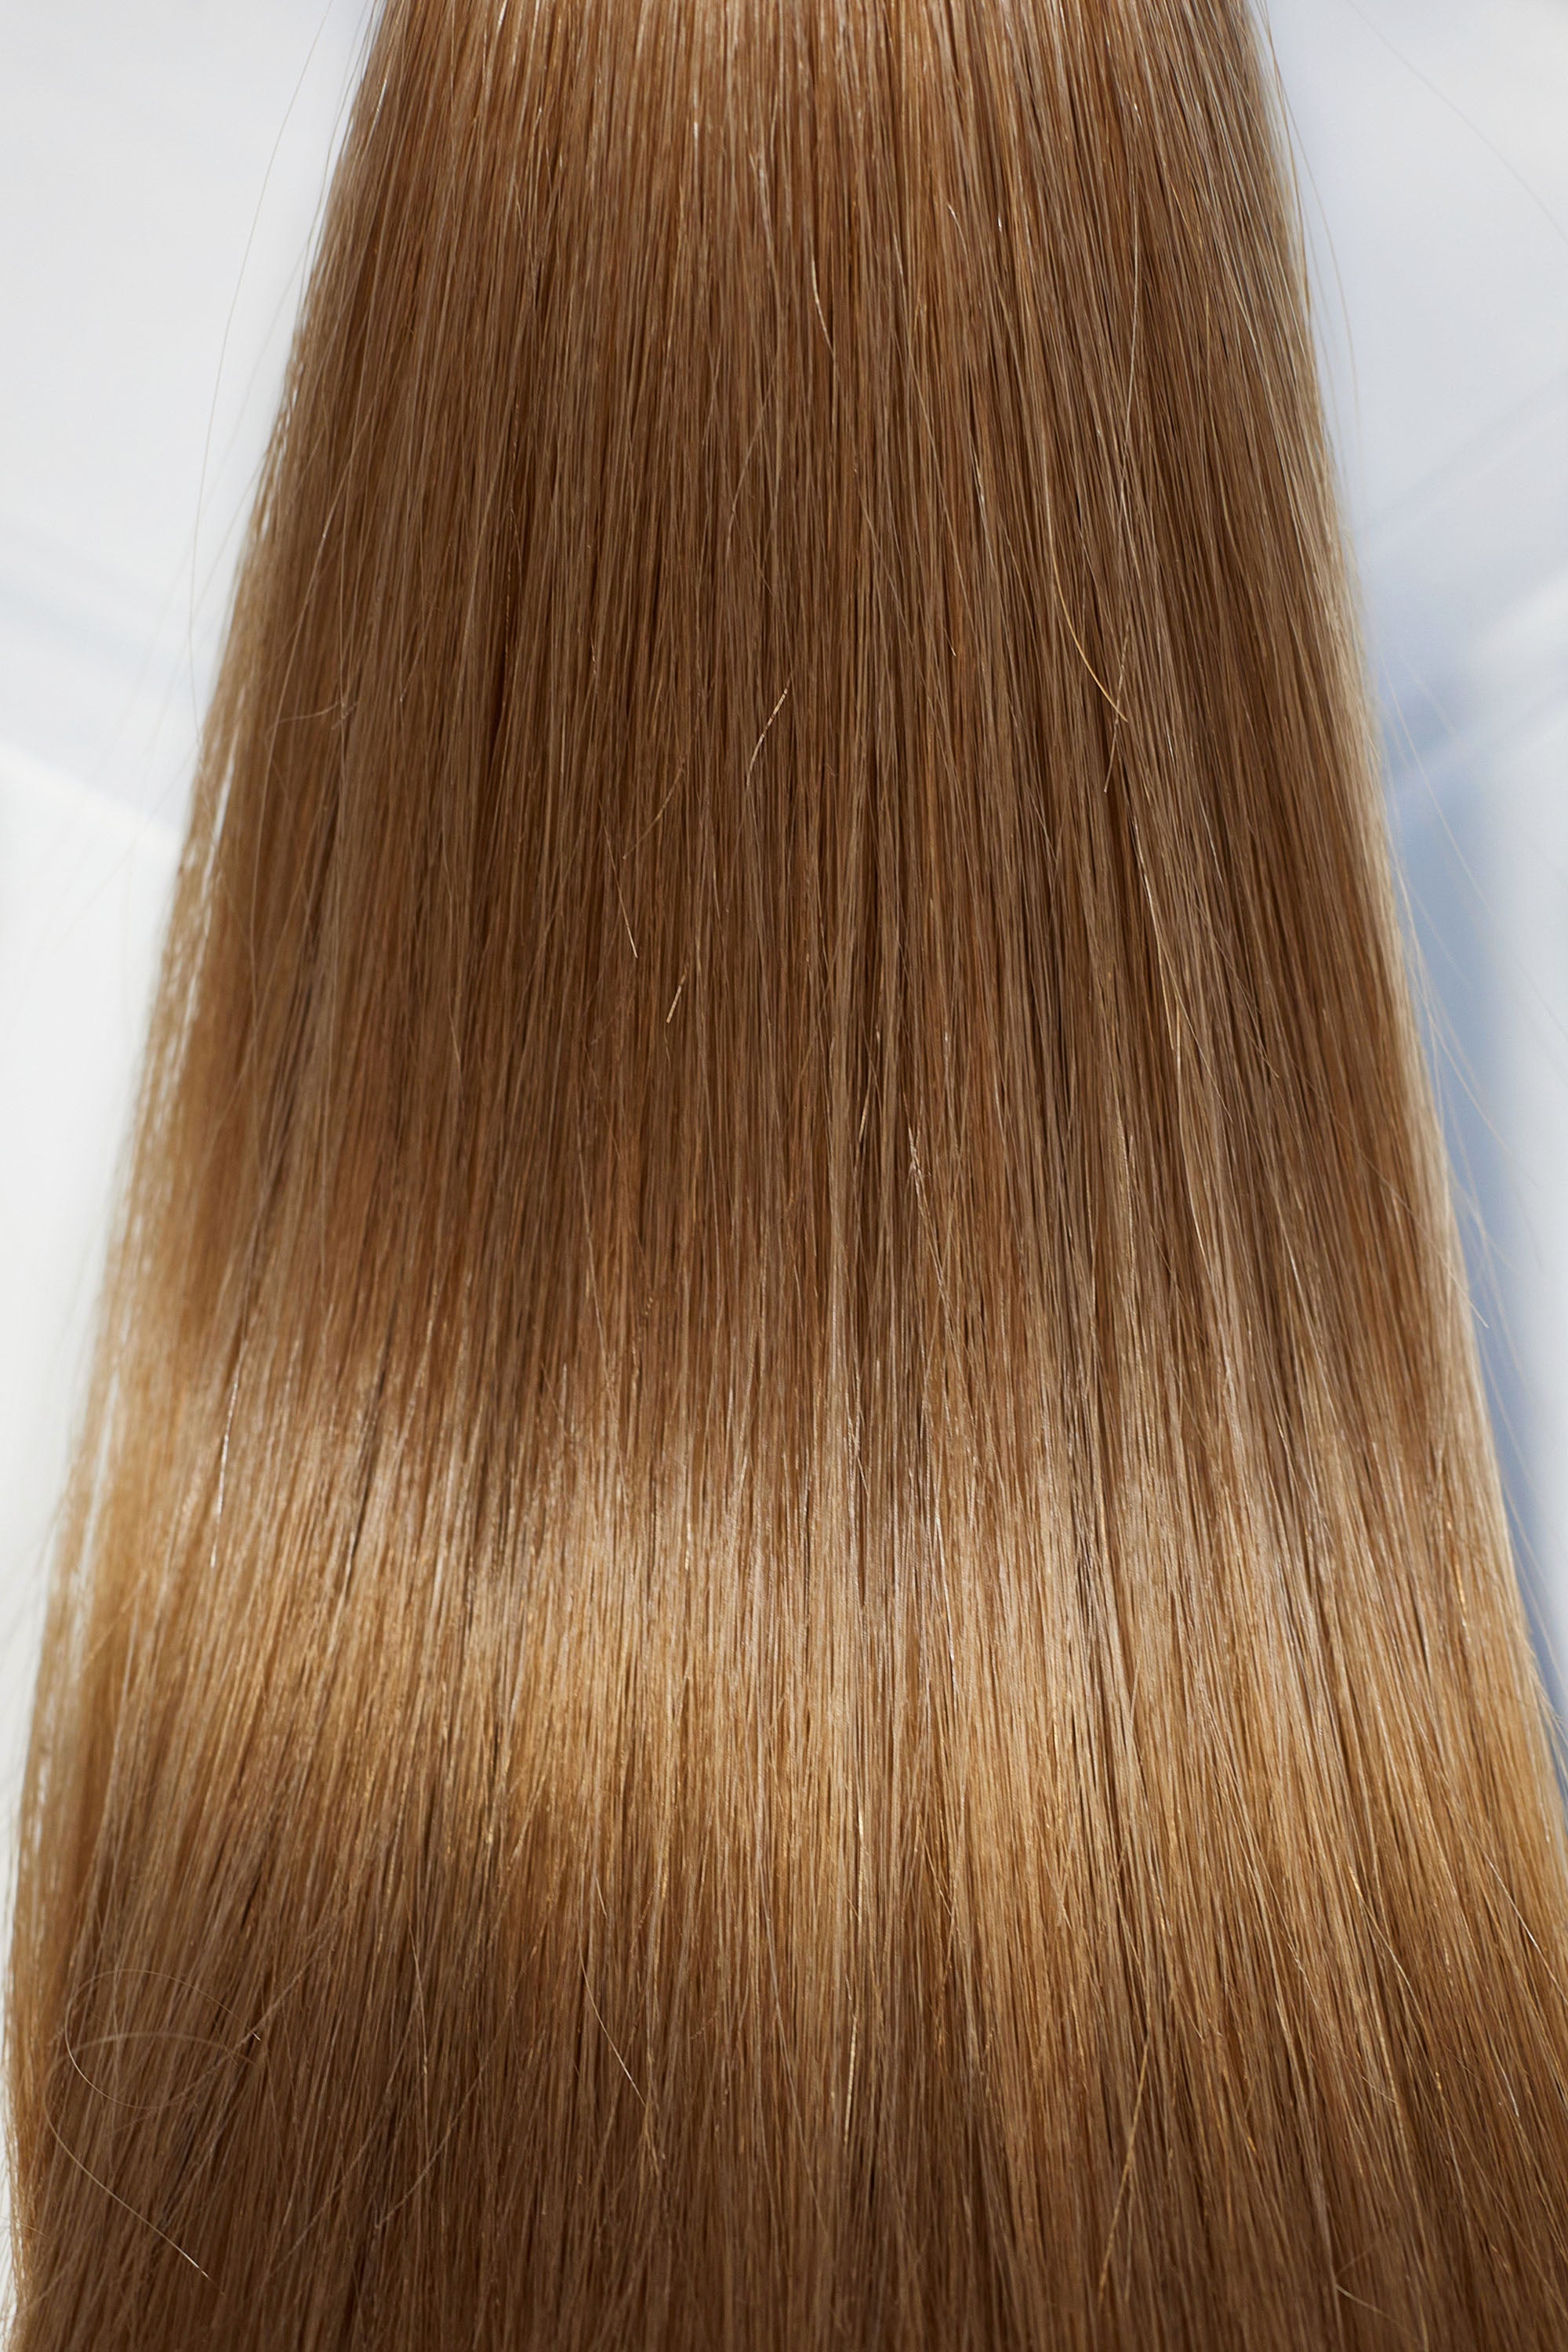 Behair professional Bulk hair "Premium" 22" (55cm) Natural Straight Caramel Brown #8 - 25g hair extensions